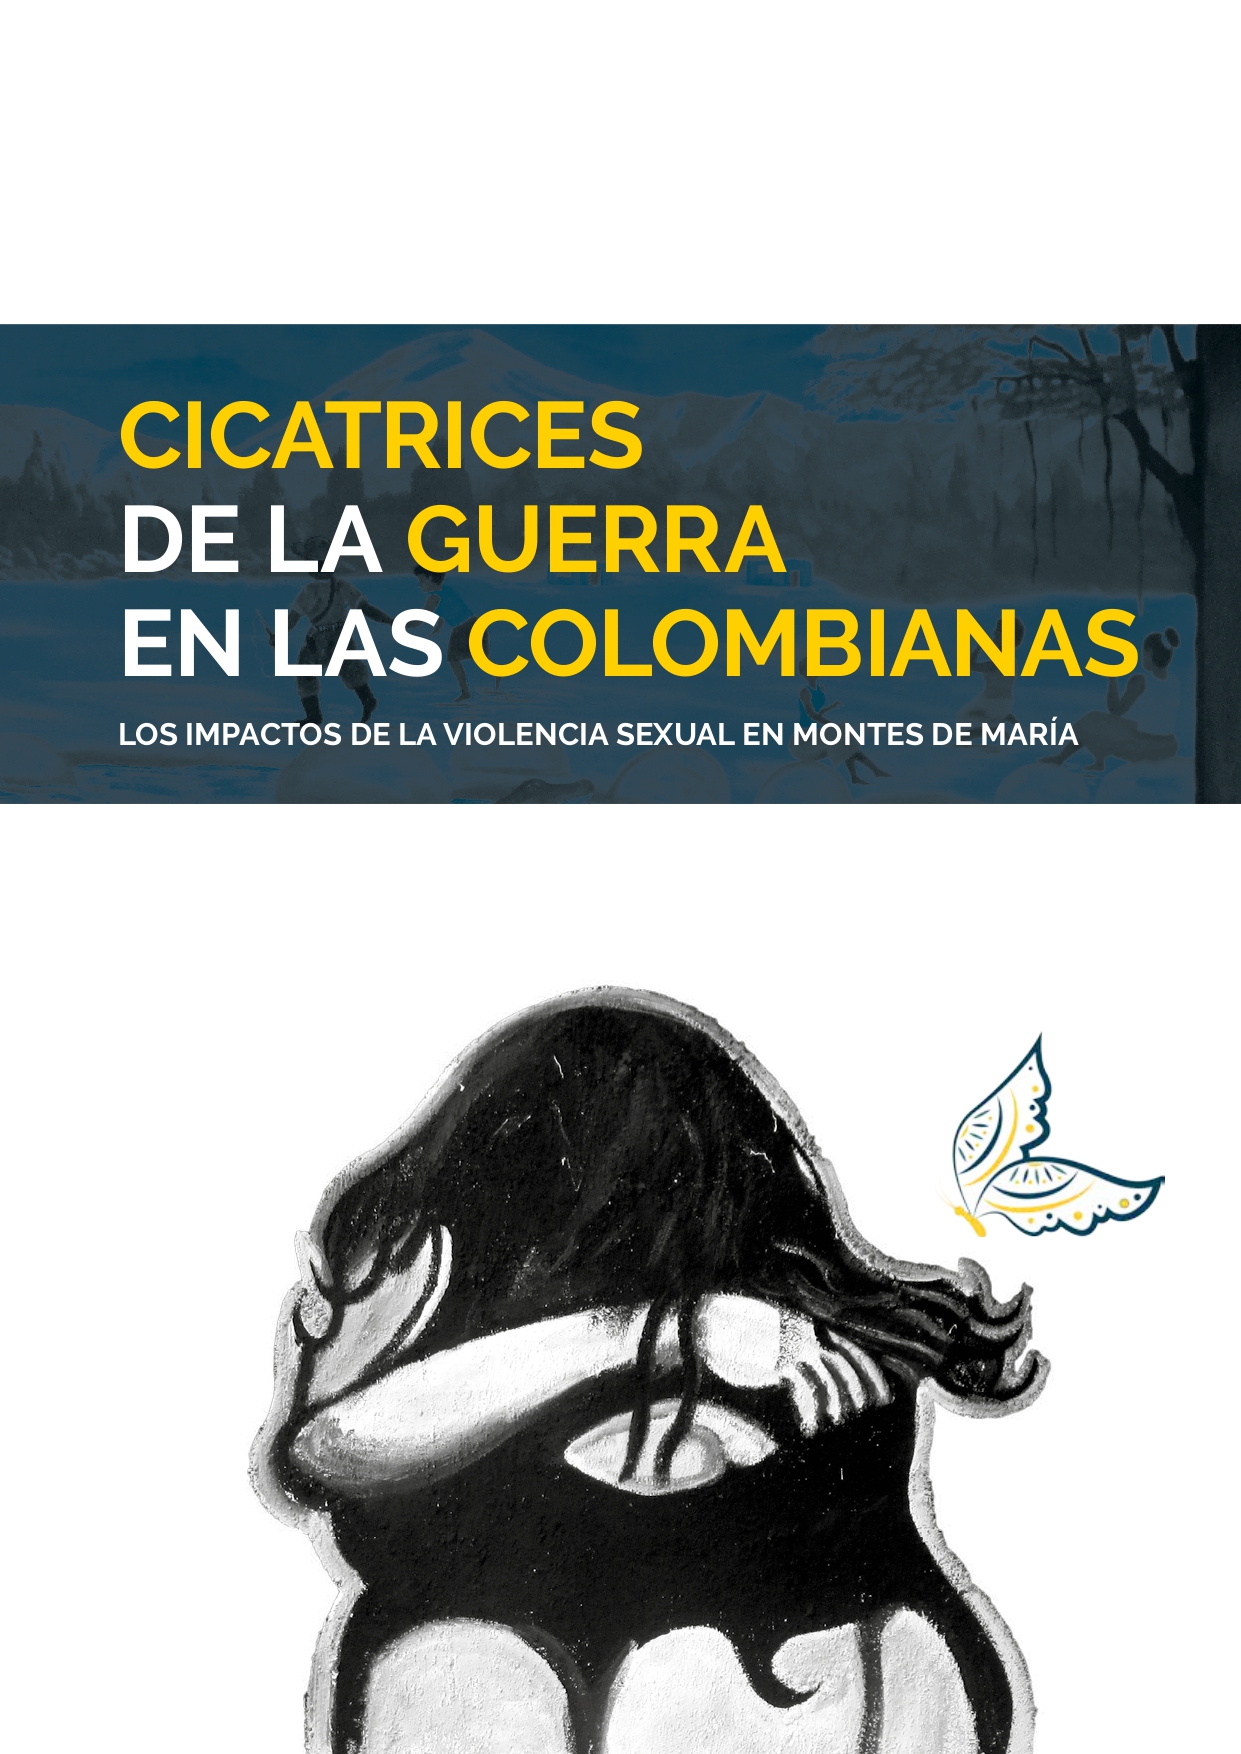 CICATRICES DE LA GUERRA EN LAS COLOMBIANAS